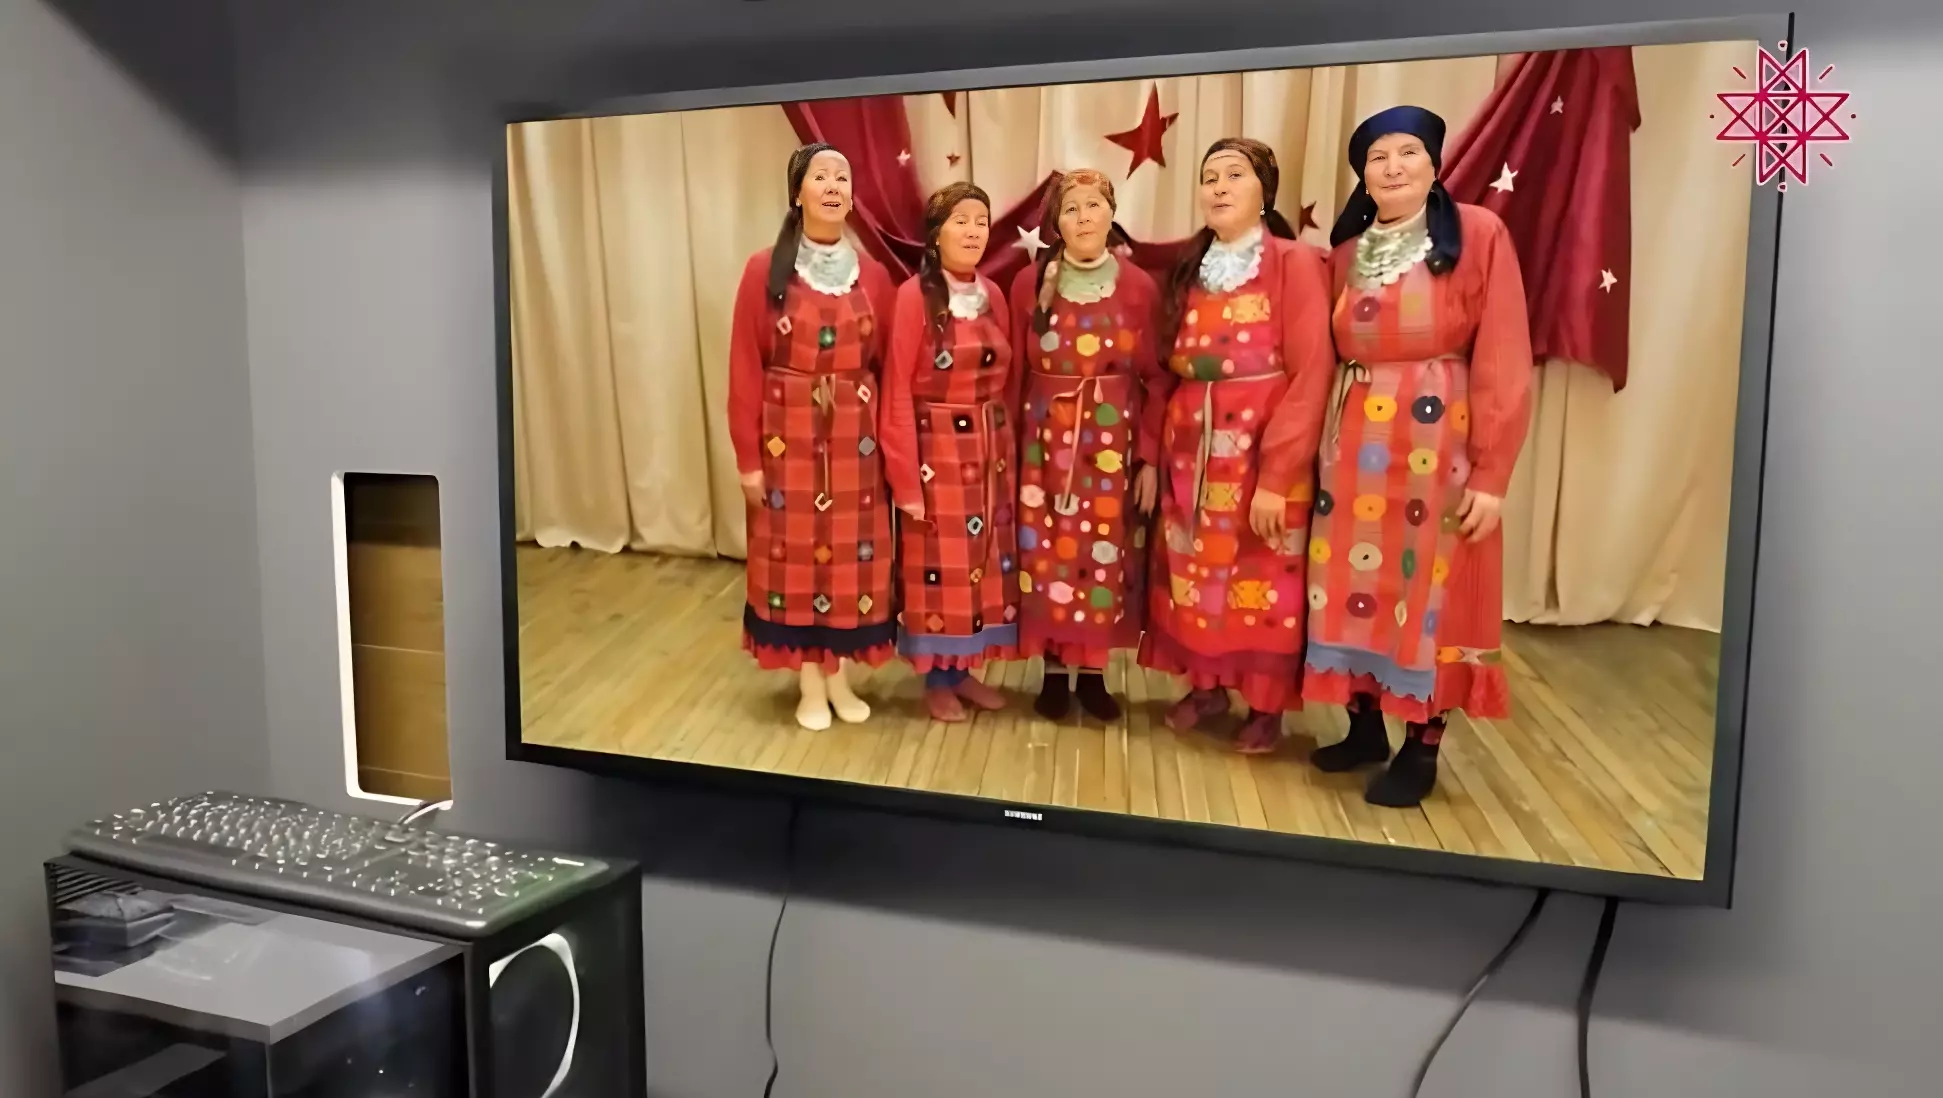 Интерактивных бабушек, сборку АК-47 и перепечи покажет Удмуртия на выставке в Москве